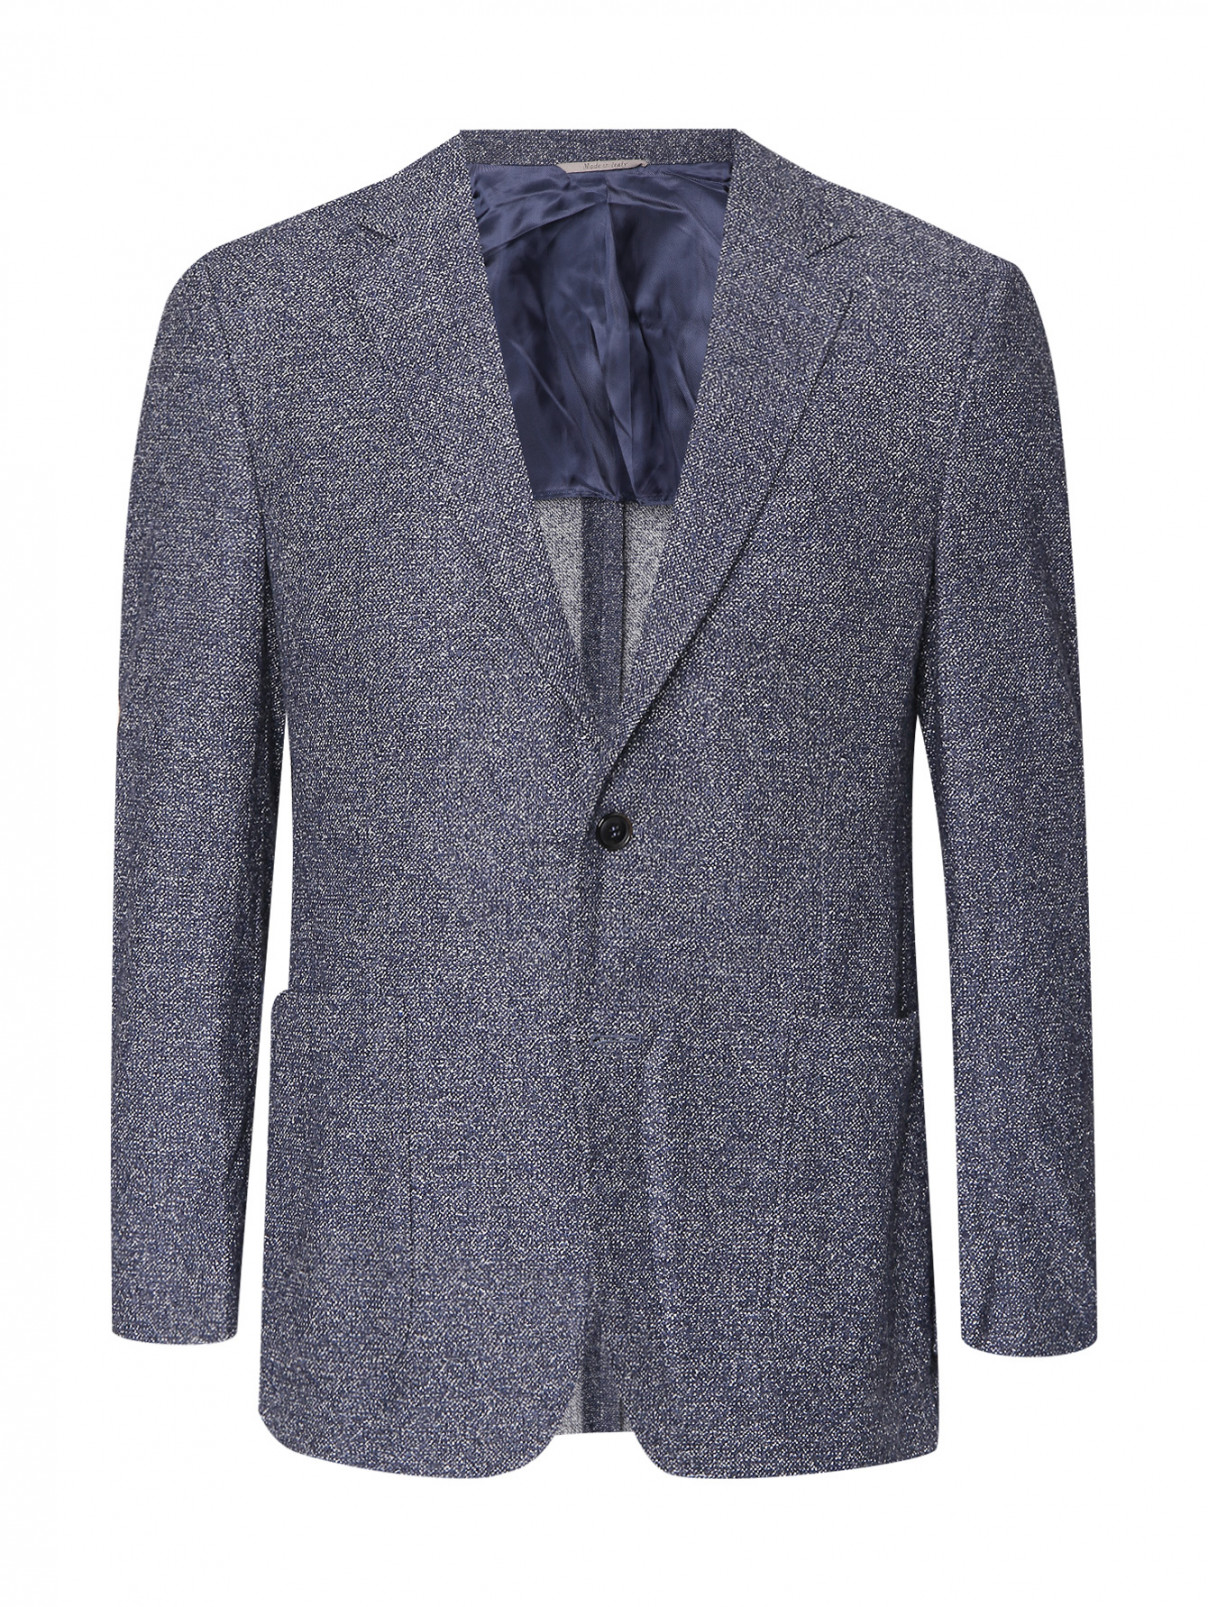 Пиджак из шерсти и хлопка с узором Canali  –  Общий вид  – Цвет:  Синий